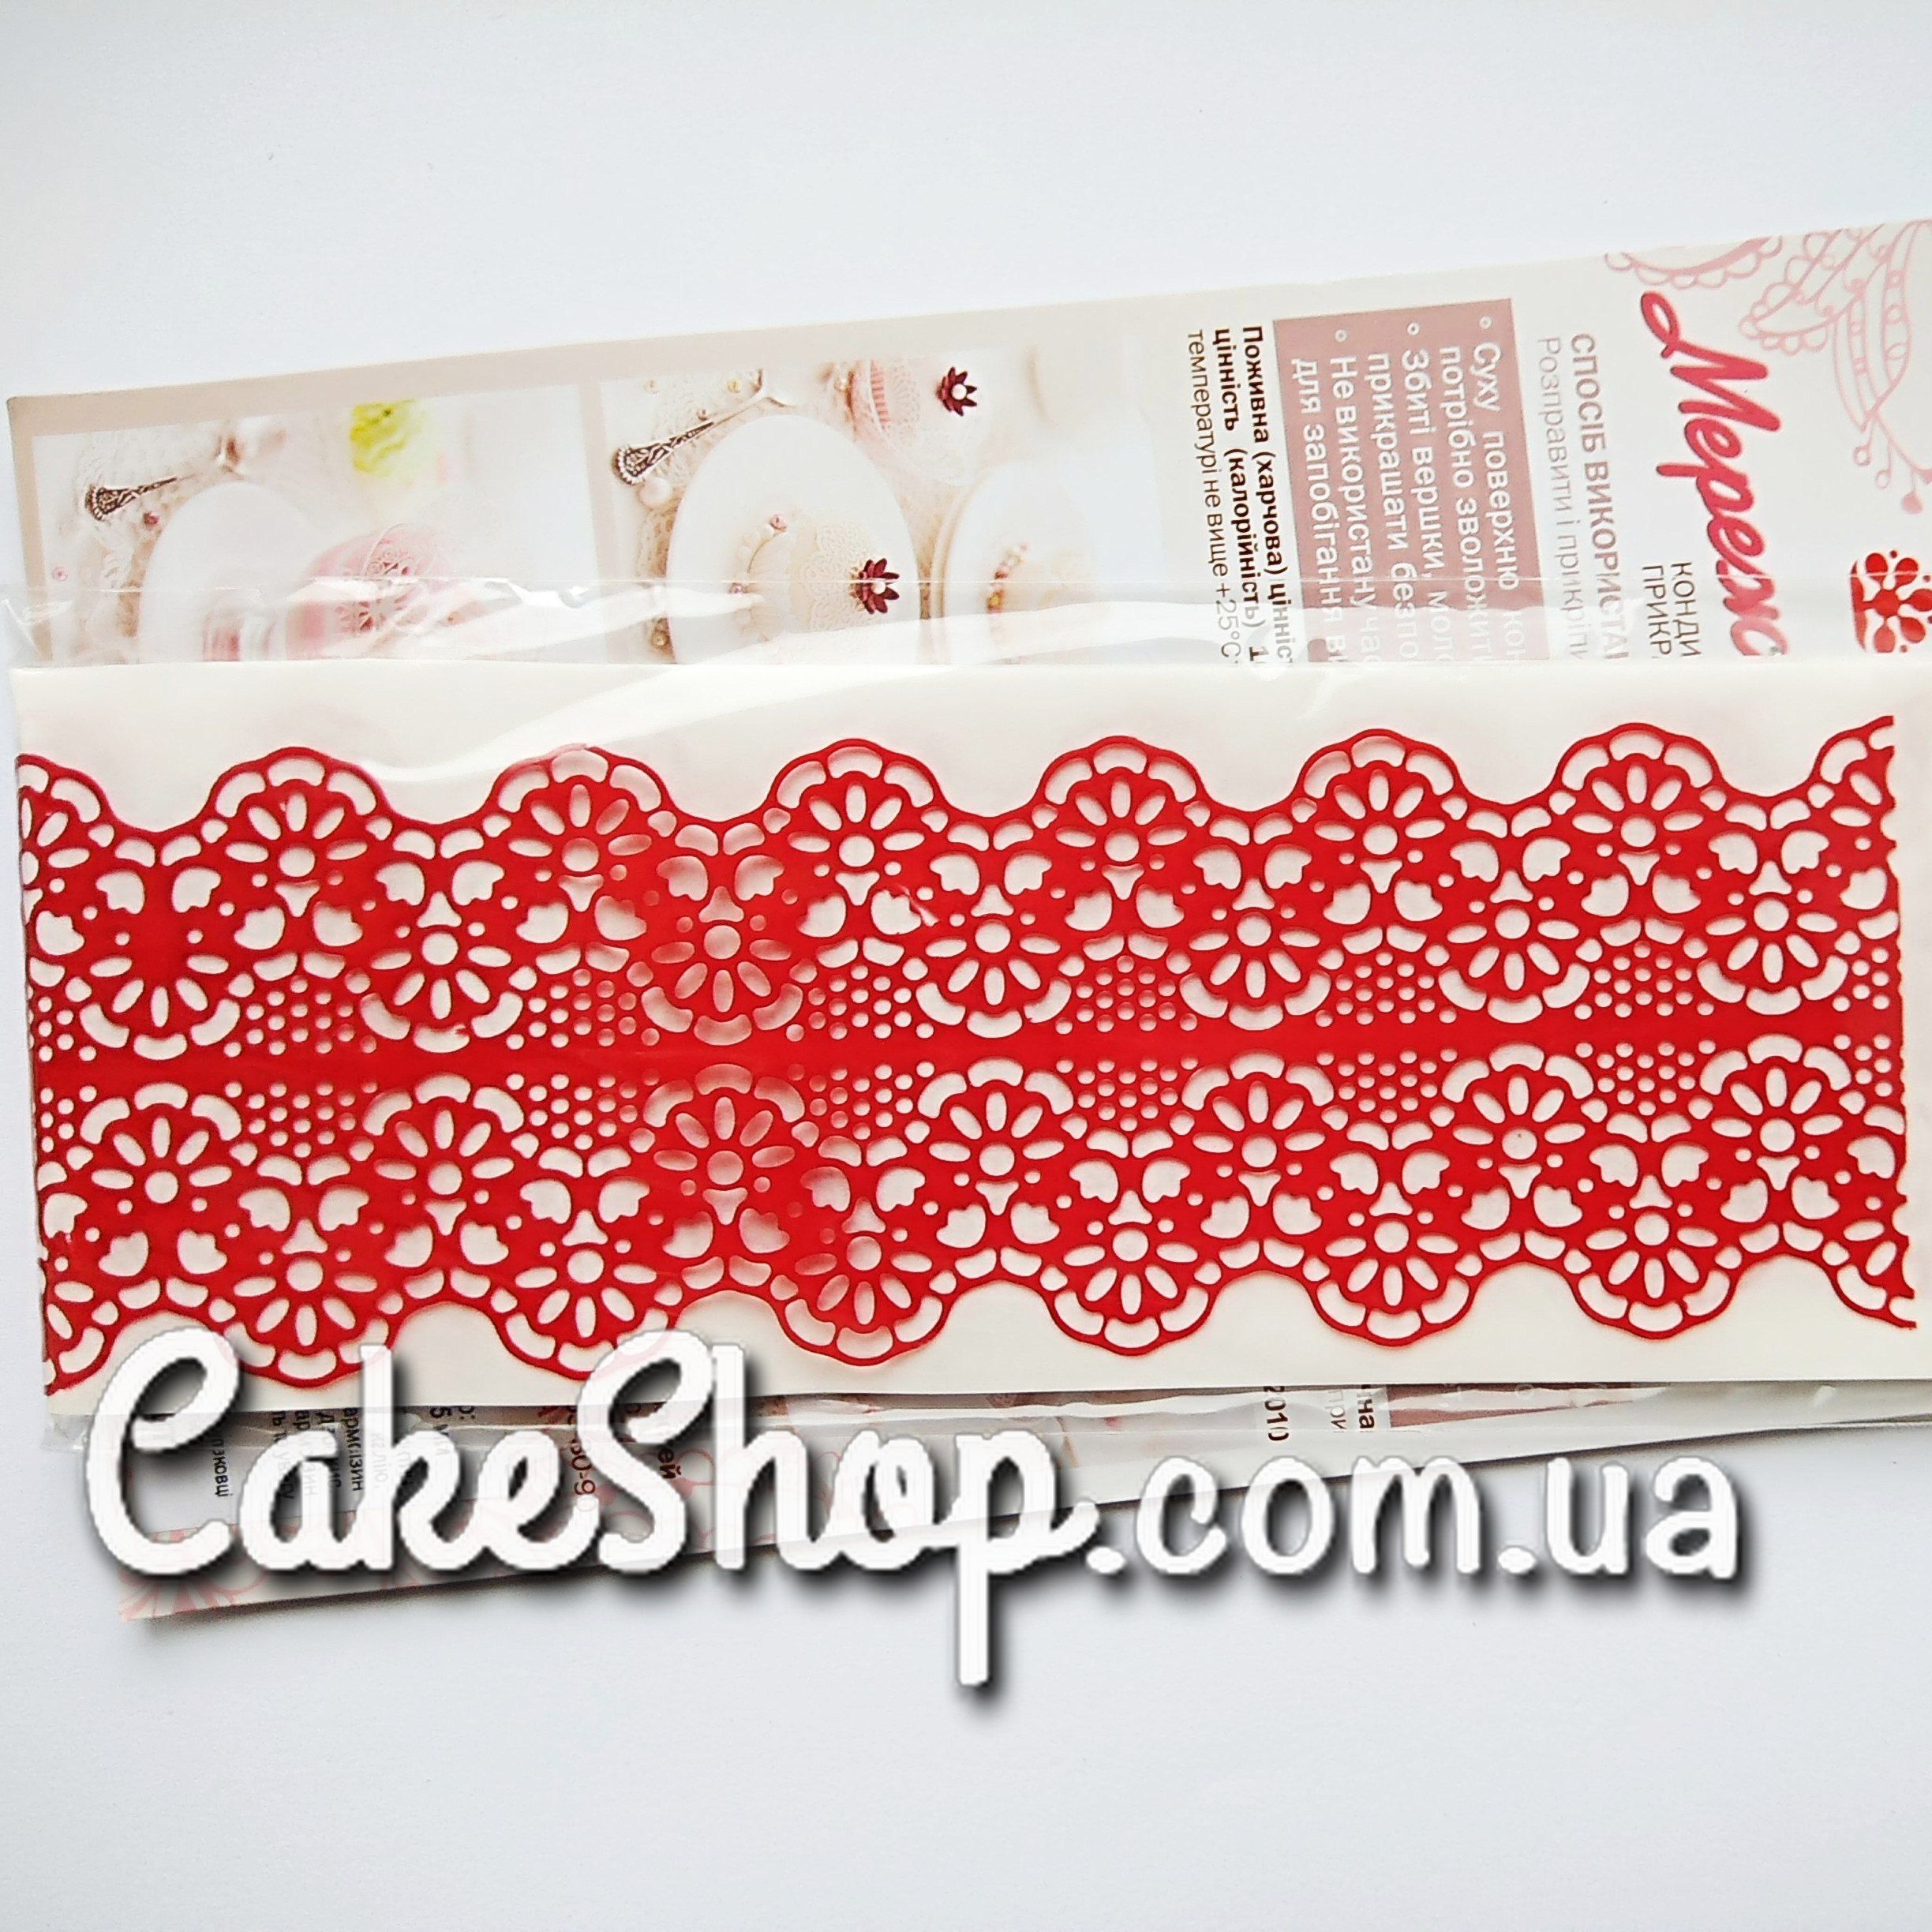 ⋗ Кружево из айсинга №181 Красное купить в Украине ➛ CakeShop.com.ua, фото